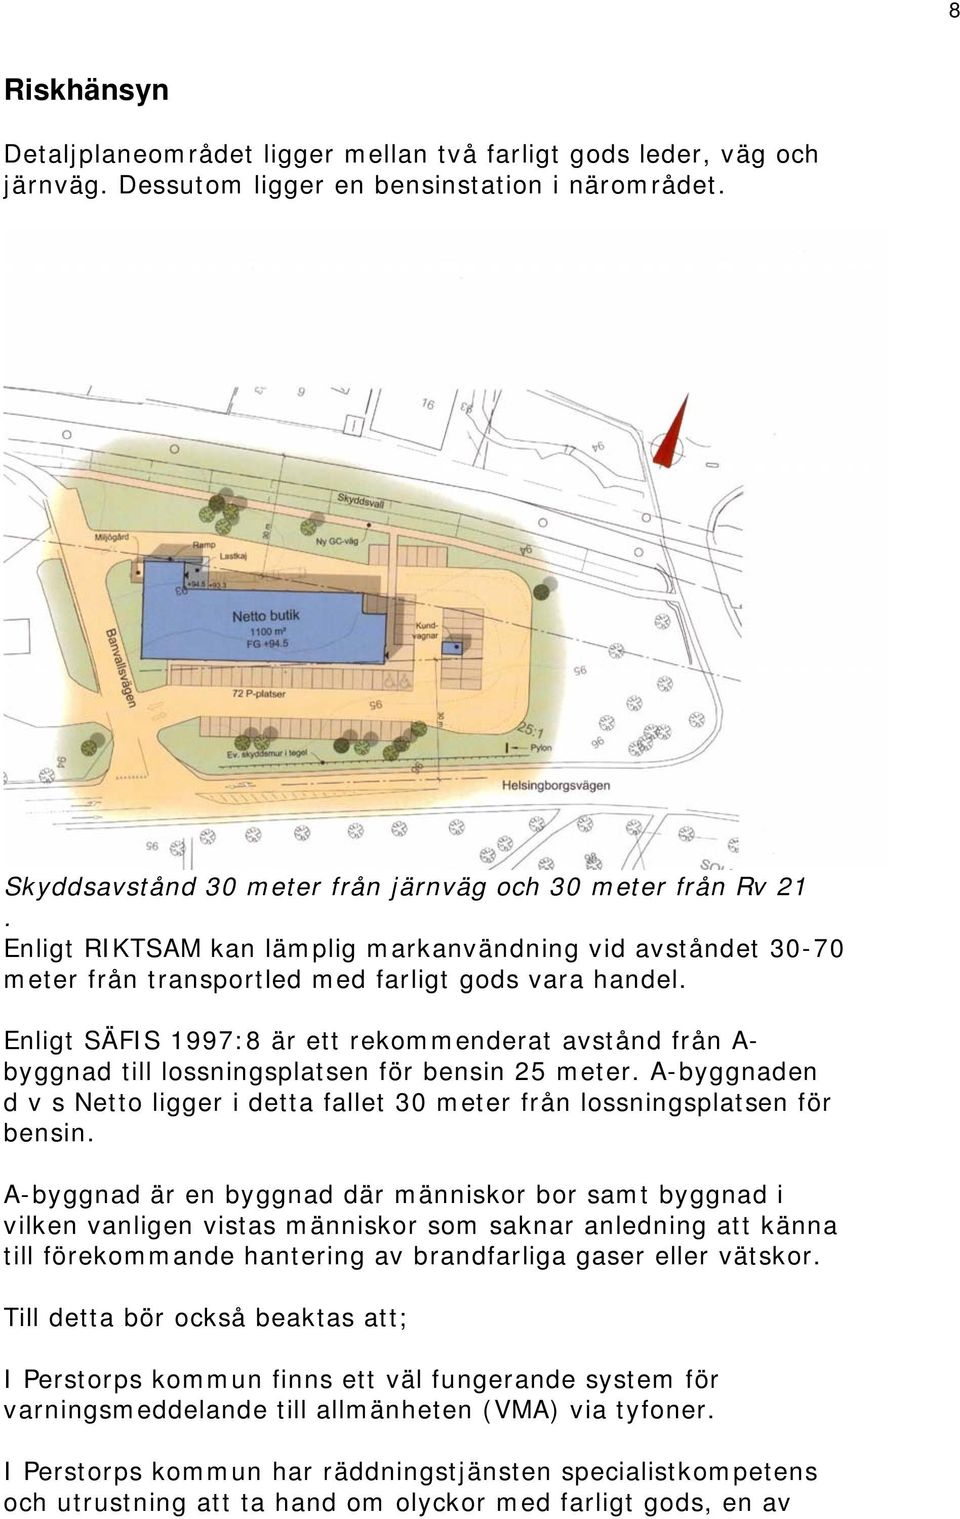 Enligt SÄFIS 1997:8 är ett rekommenderat avstånd från A- byggnad till lossningsplatsen för bensin 25 meter. A-byggnaden d v s Netto ligger i detta fallet 30 meter från lossningsplatsen för bensin.